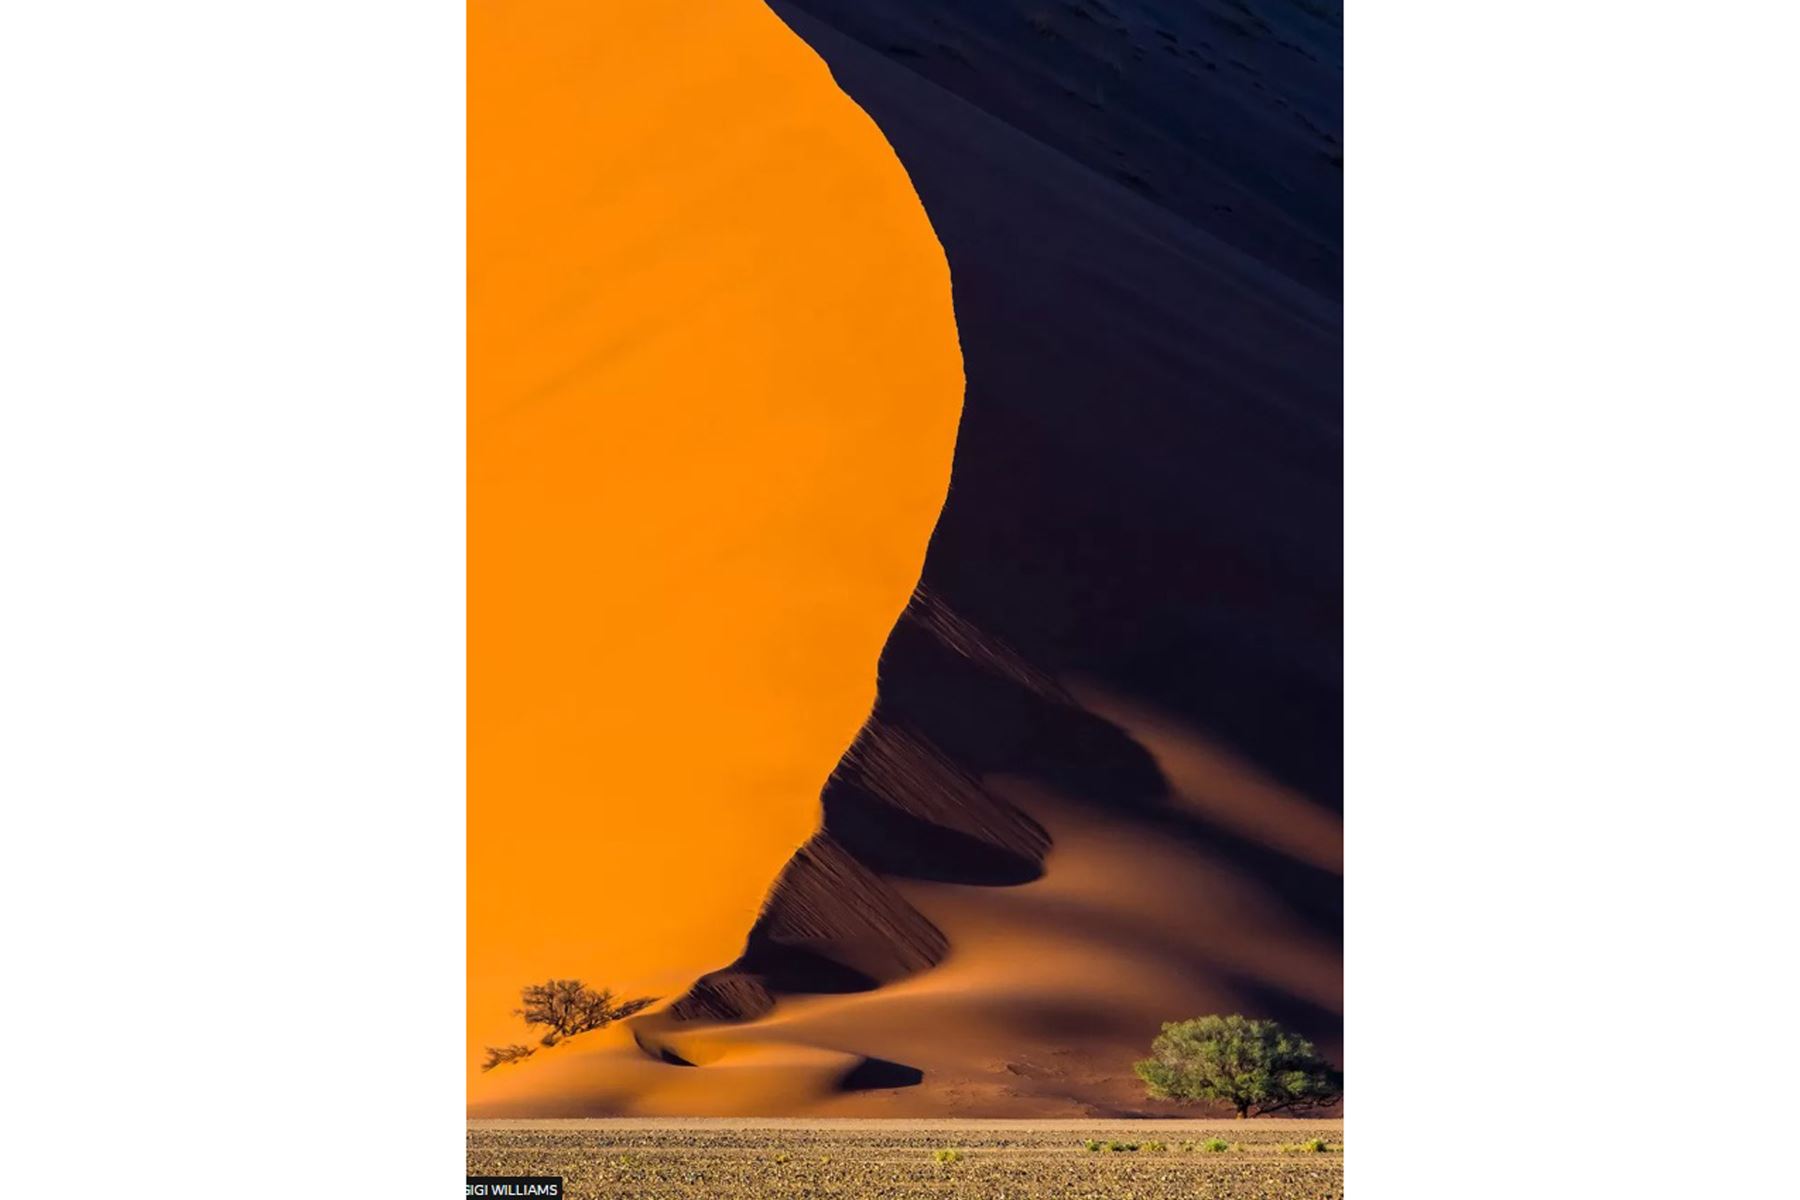 La fotografía de Gigi Williams del desierto de Namib en Namibia obtuvo el primer lugar en la categoría Plantas y planetas.
Foto:Gigi Williams